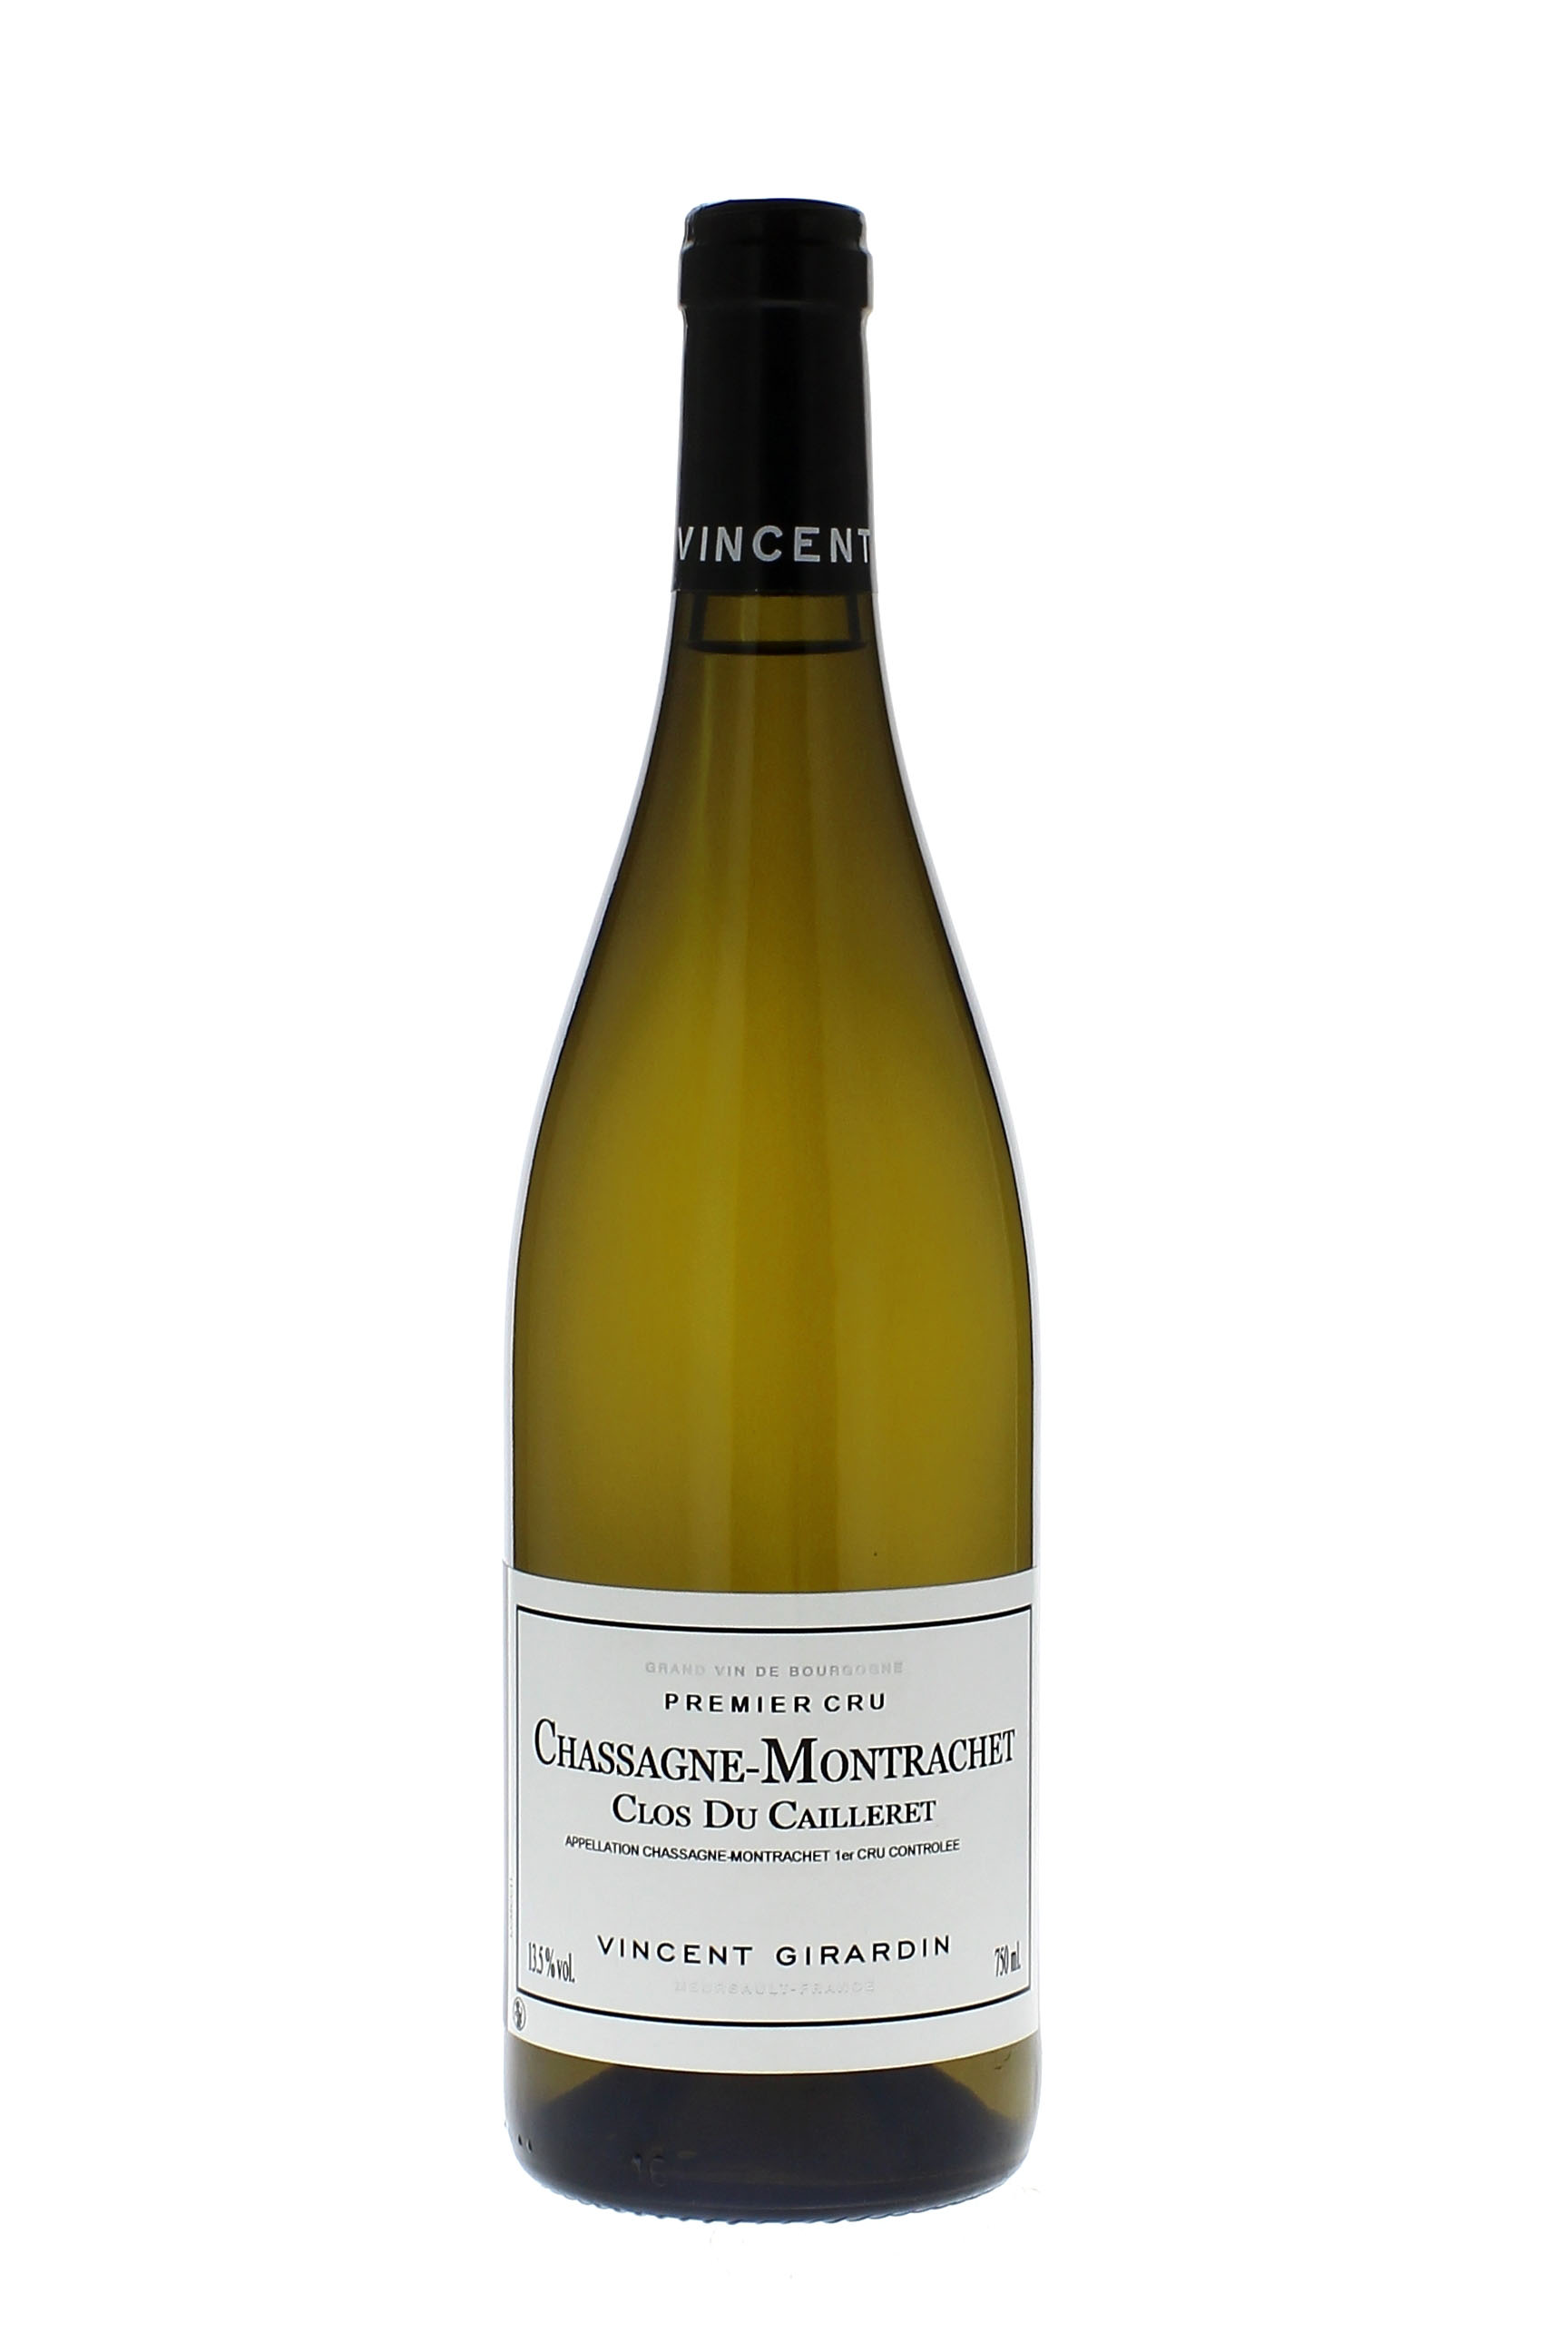 Chassagne montrachet 1er cru clos du cailleret 2013 Domaine GIRARDIN Vincent, Bourgogne blanc